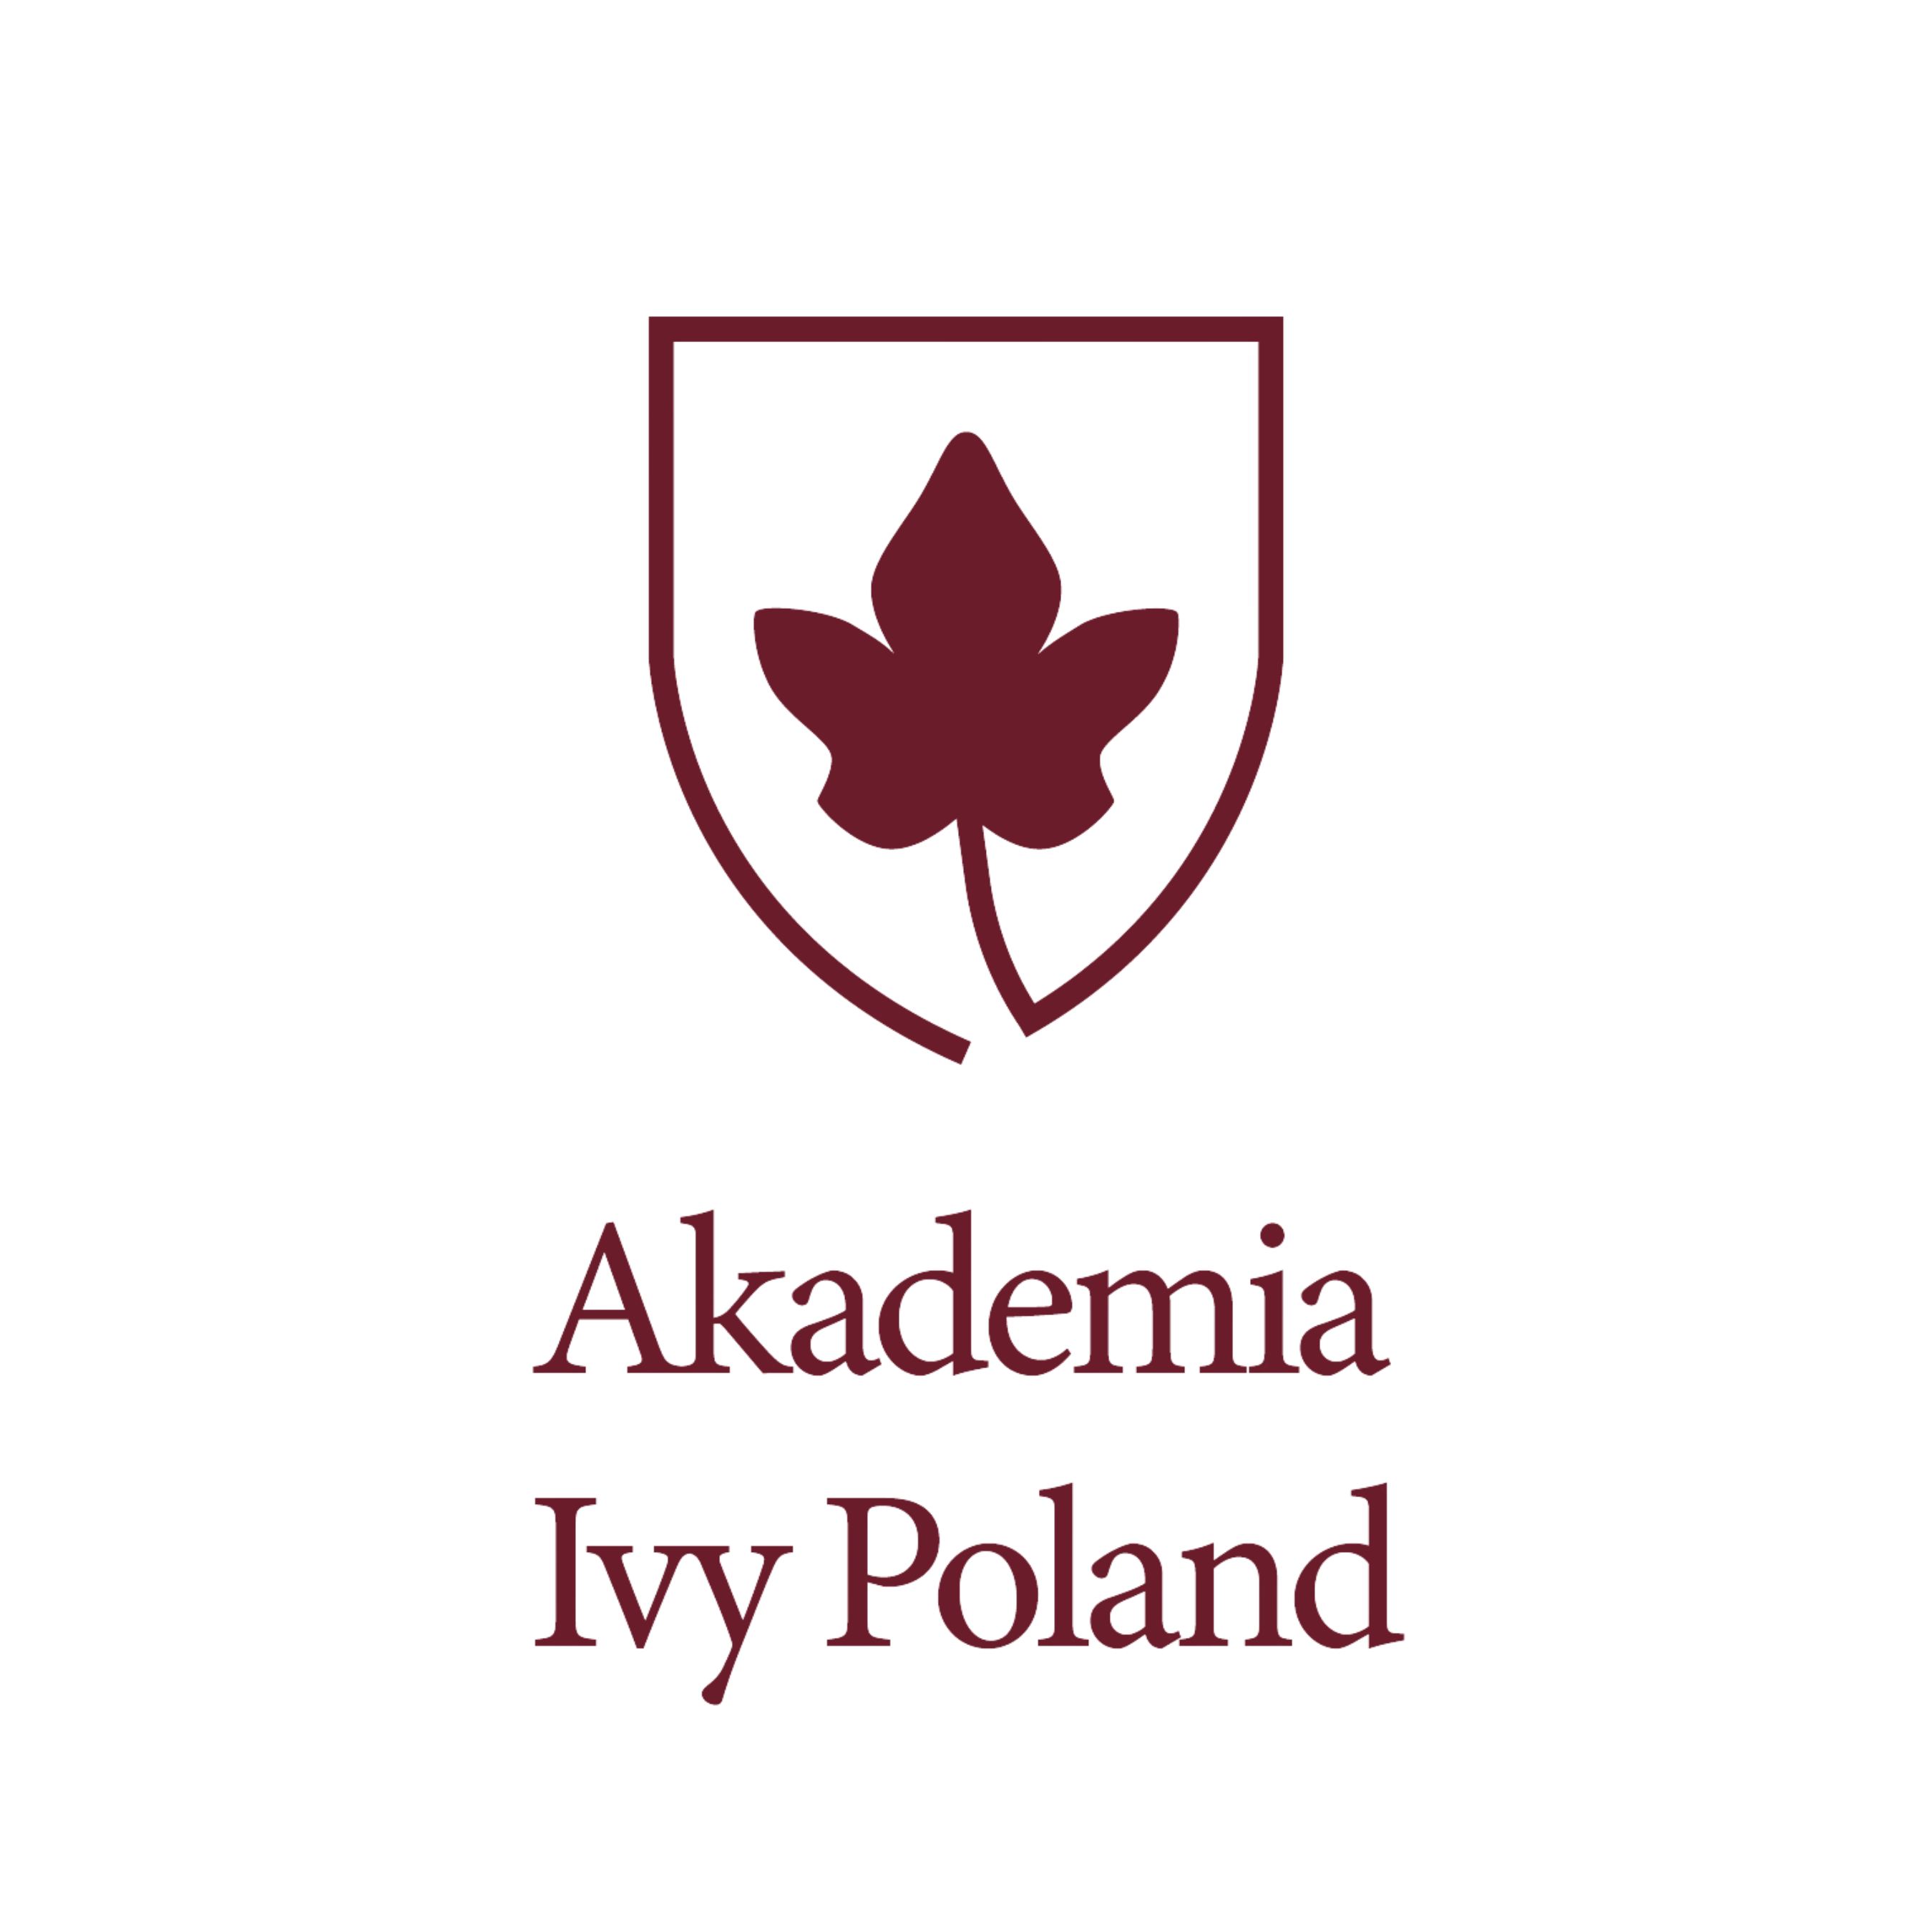 Kopia Akademia Ivy Poland (1)